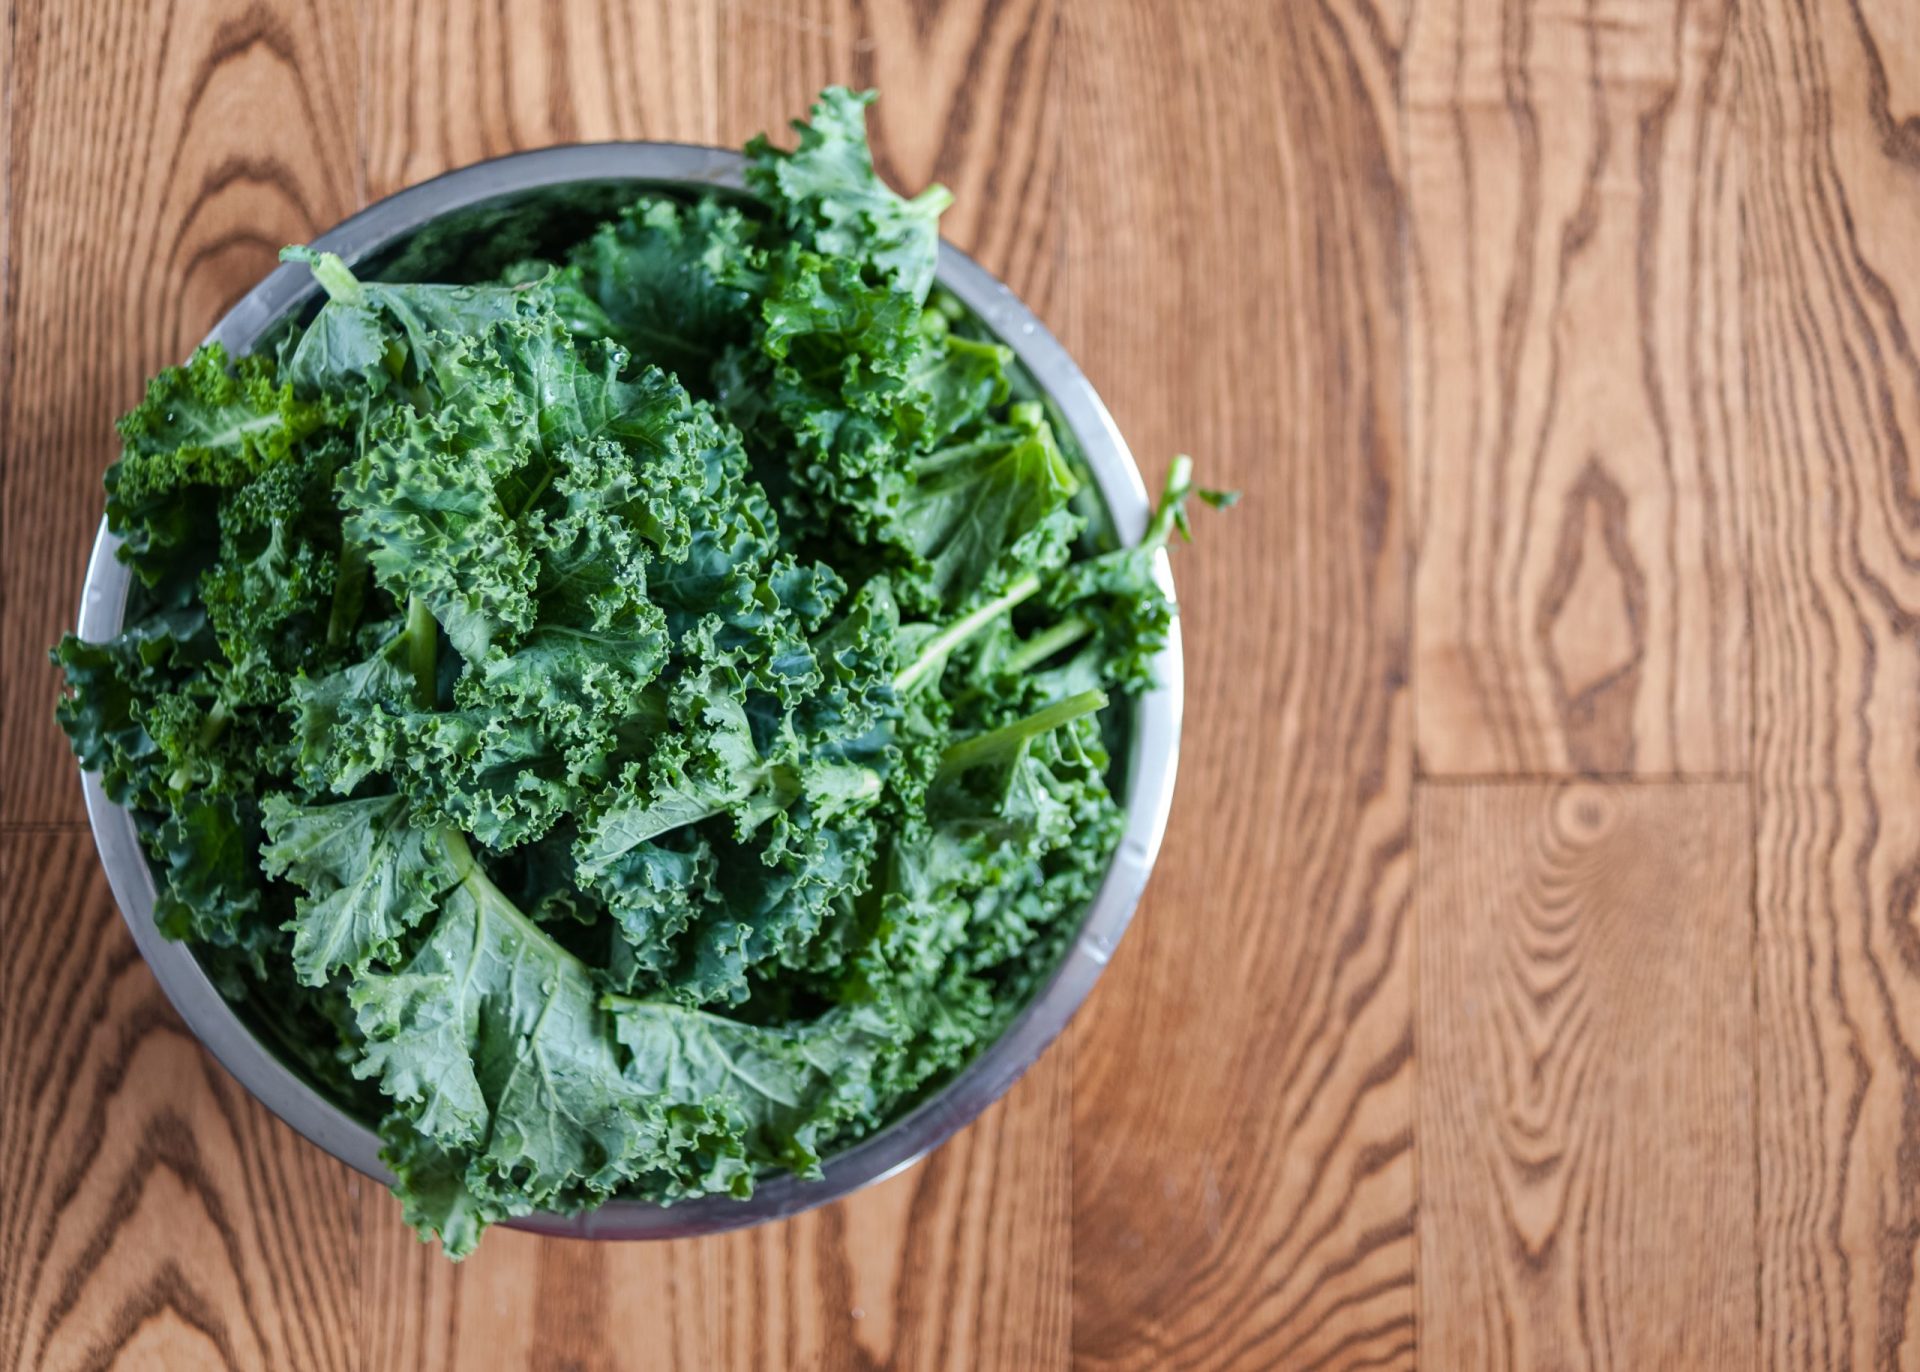 Comer vegetais com folhas verdes ajuda a prevenir a demência